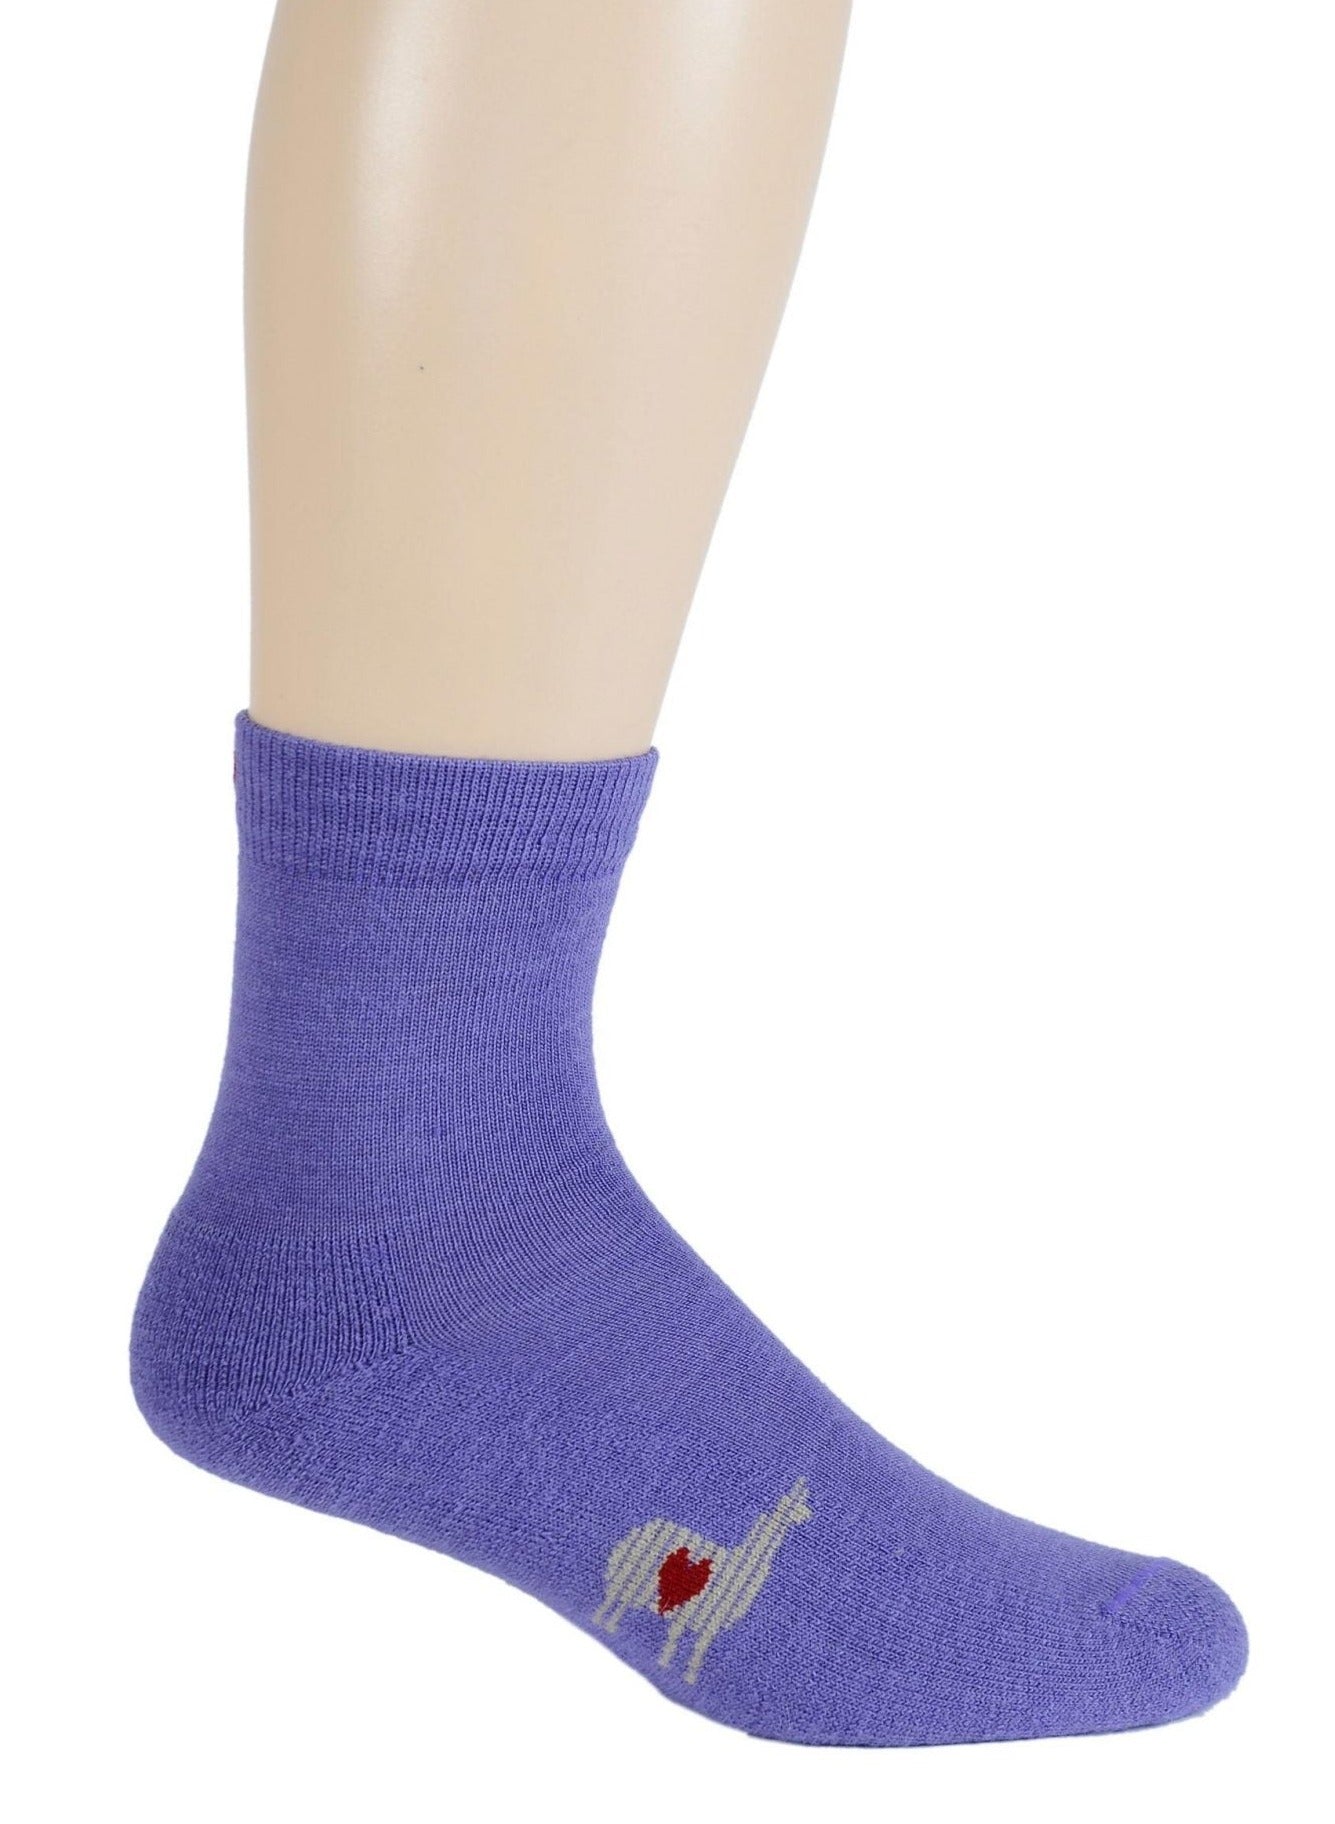 Alpaca Socks - Lightweight Short